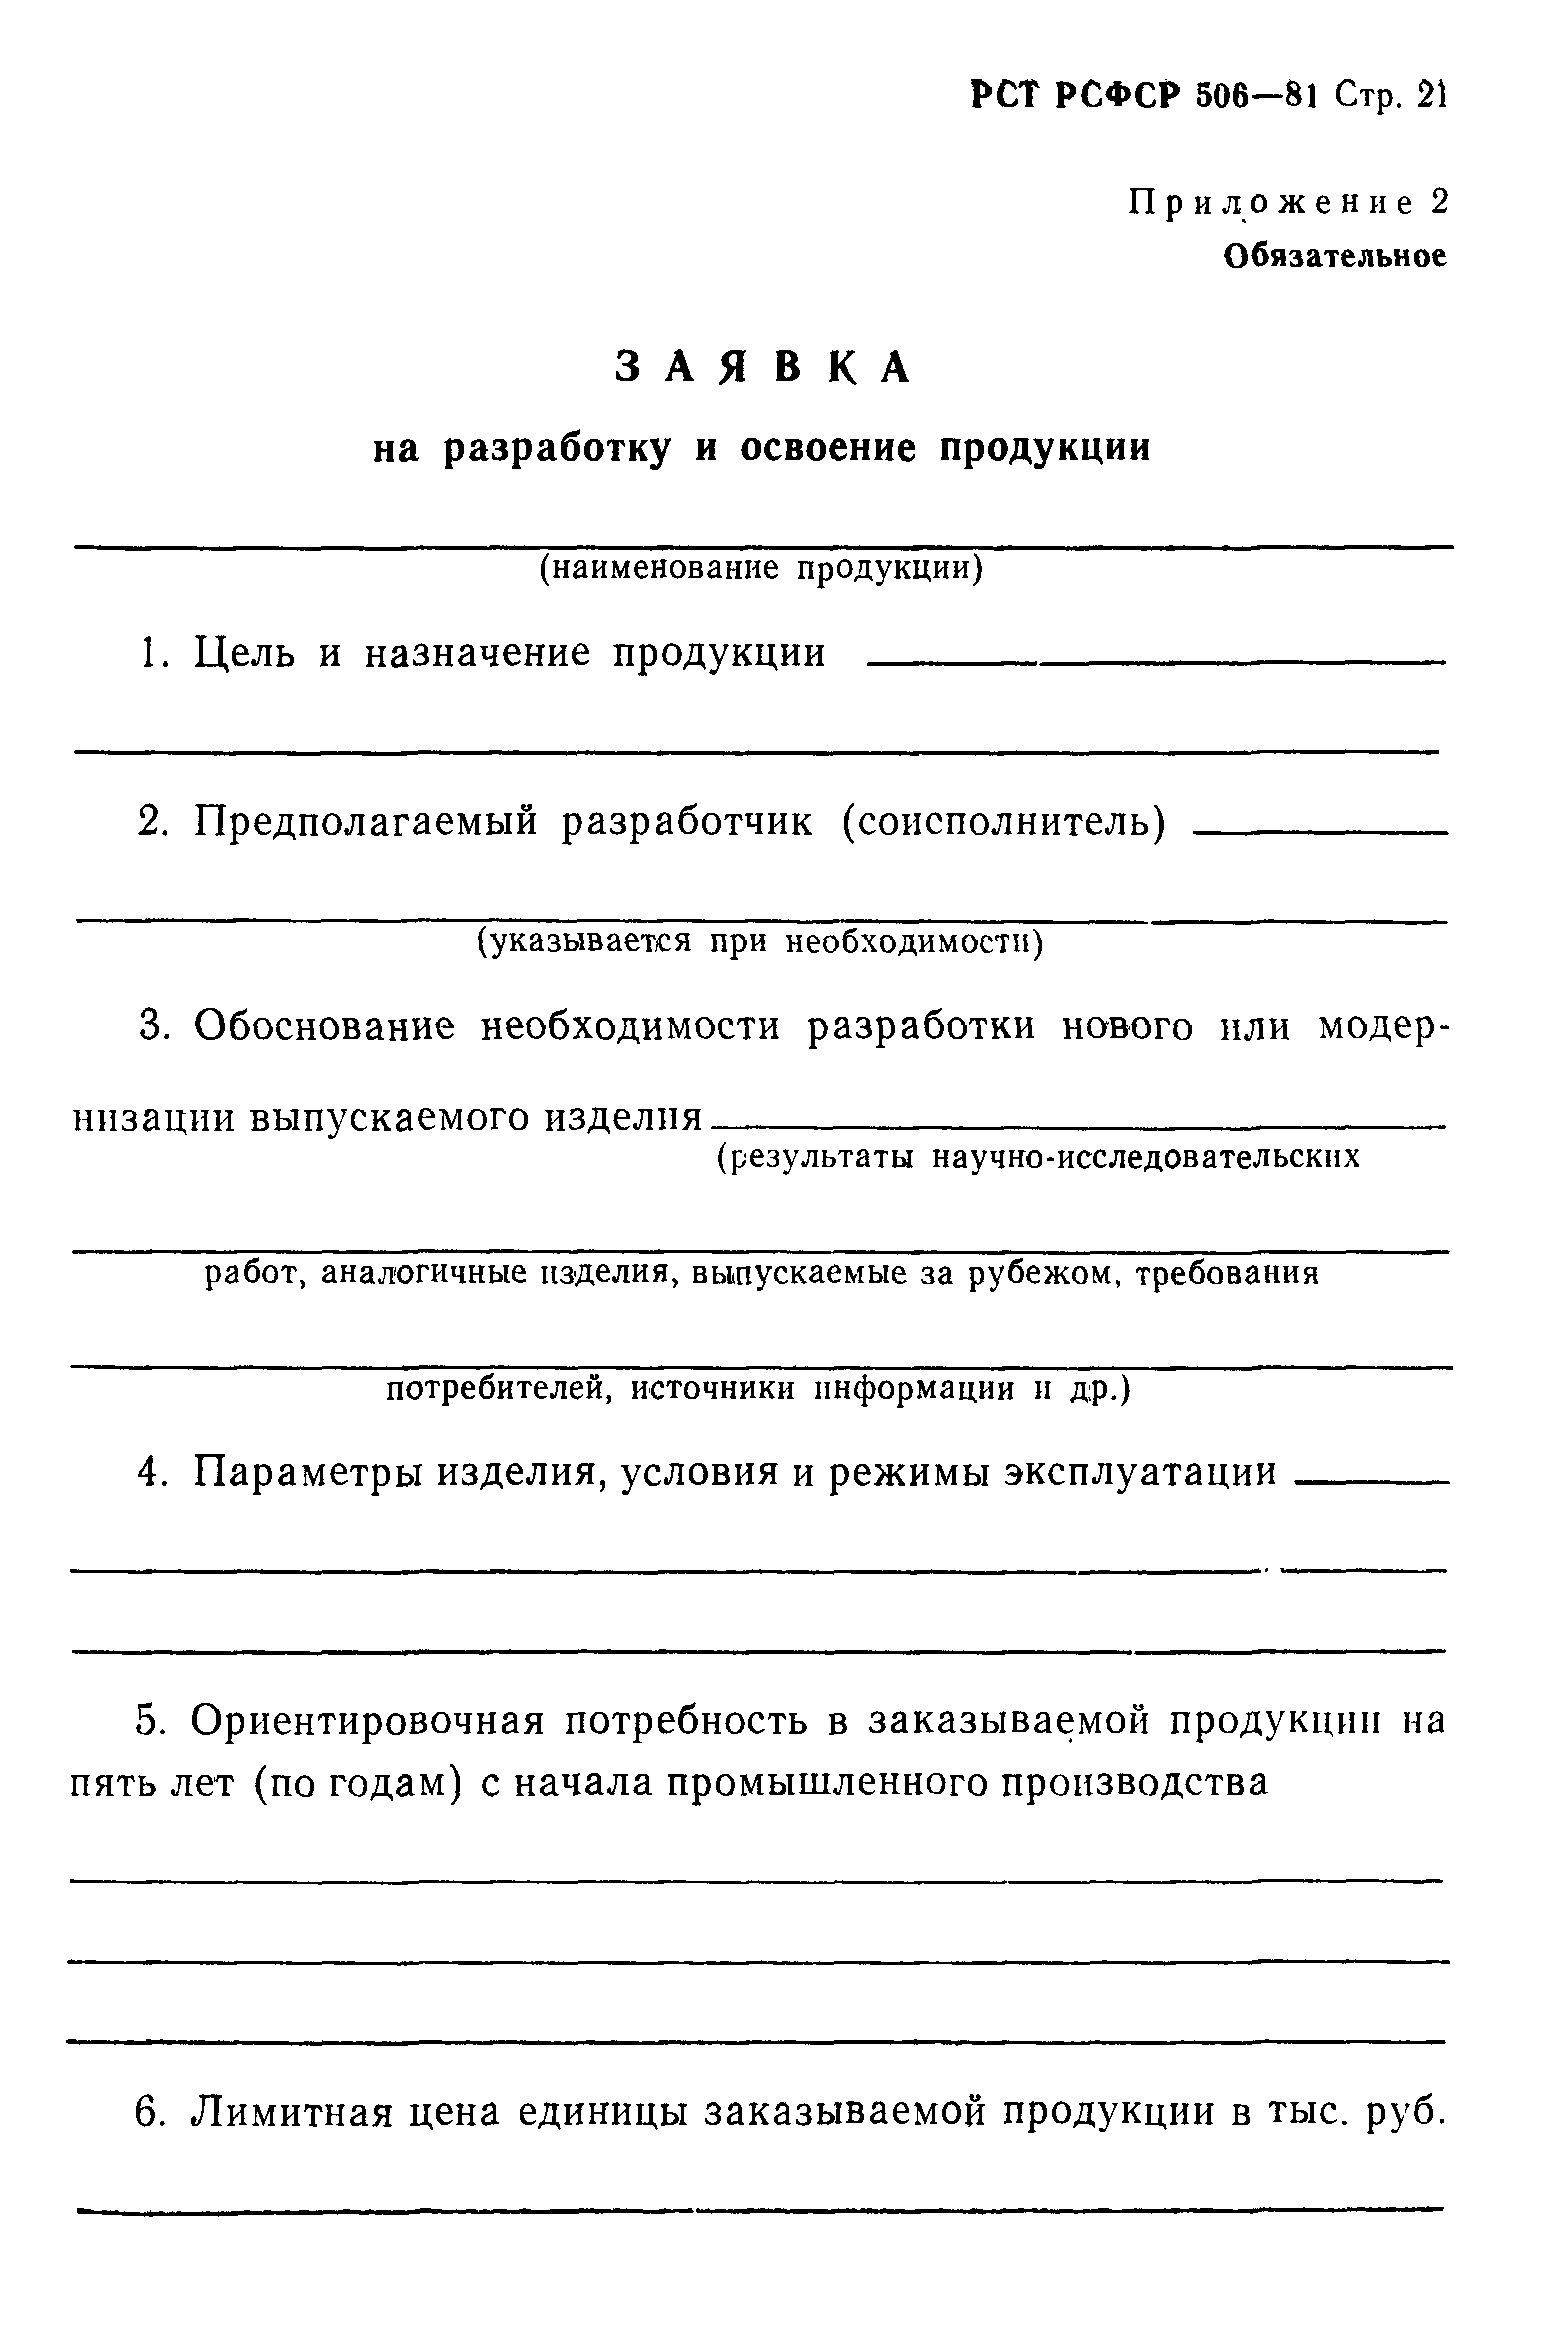 РСТ РСФСР 506-81